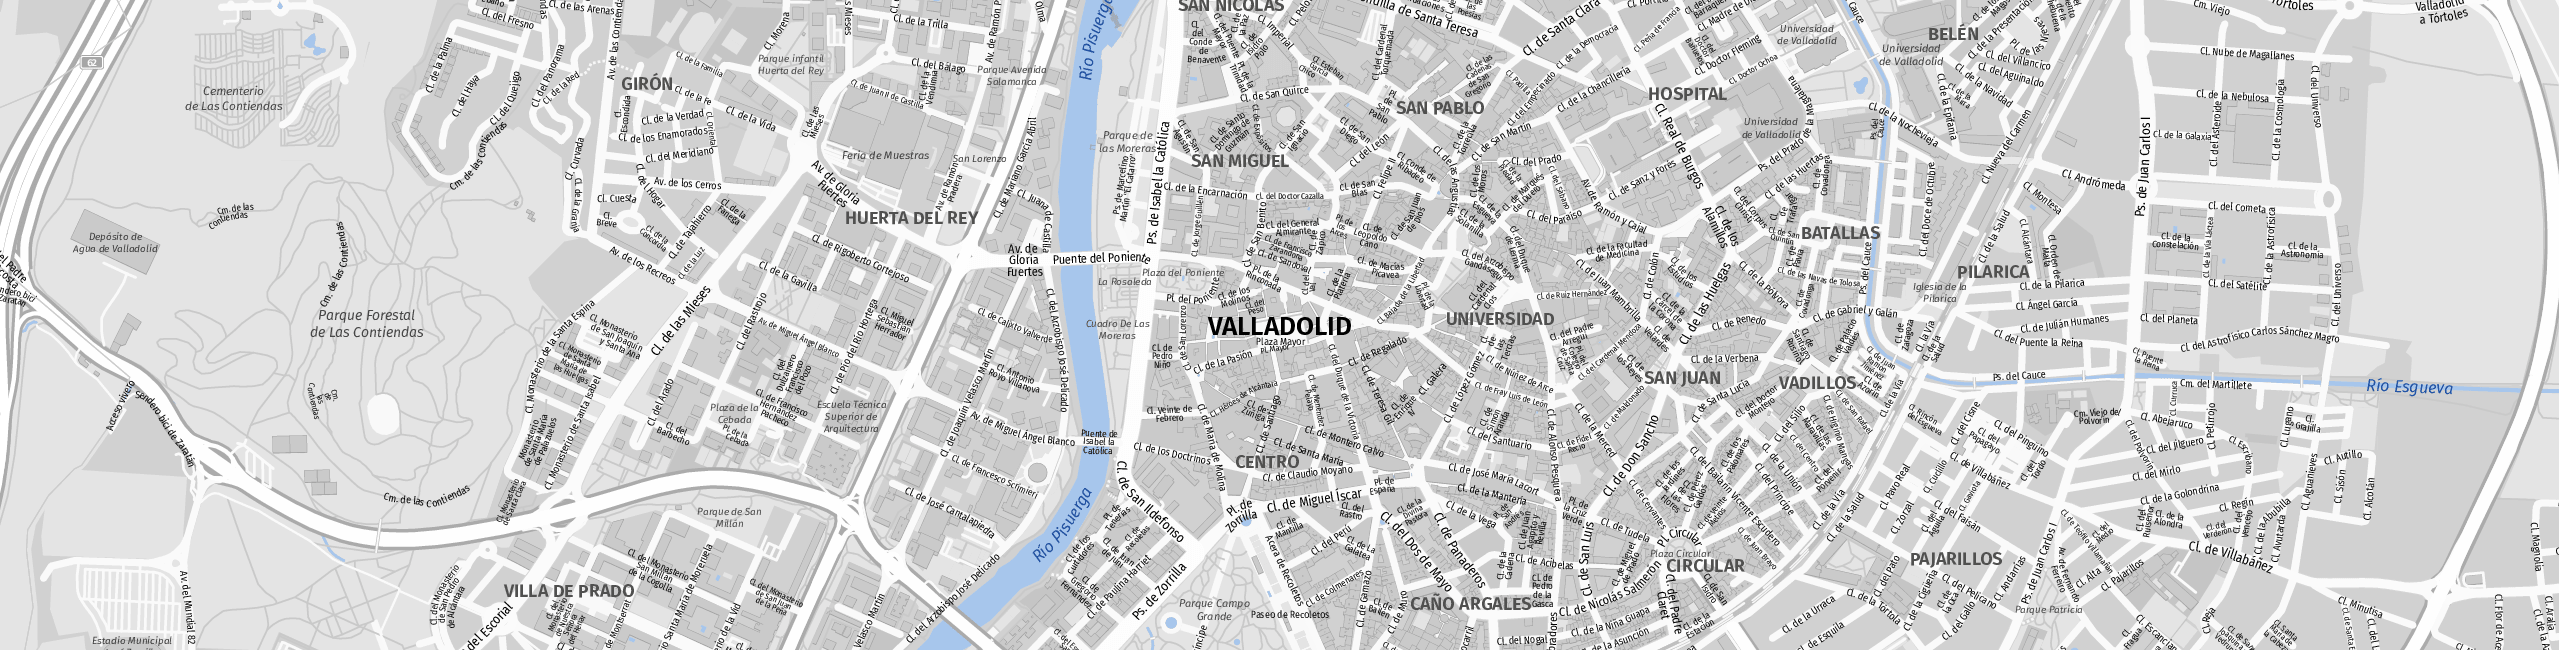 Stadtplan Valladolid zum Downloaden.